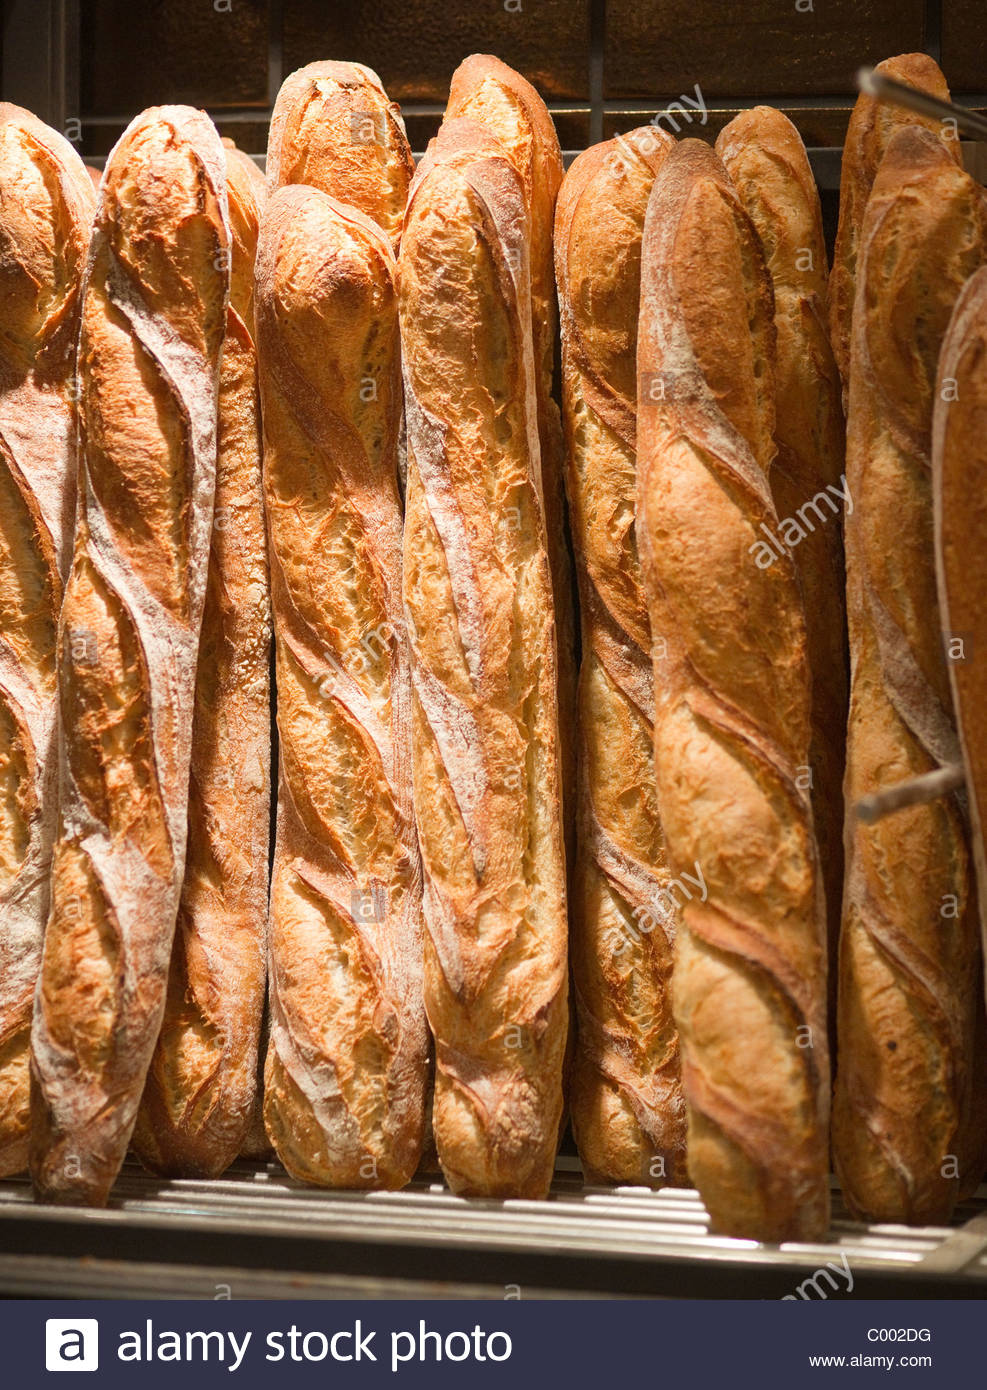 bakery paris france baguette bread shop C002DG